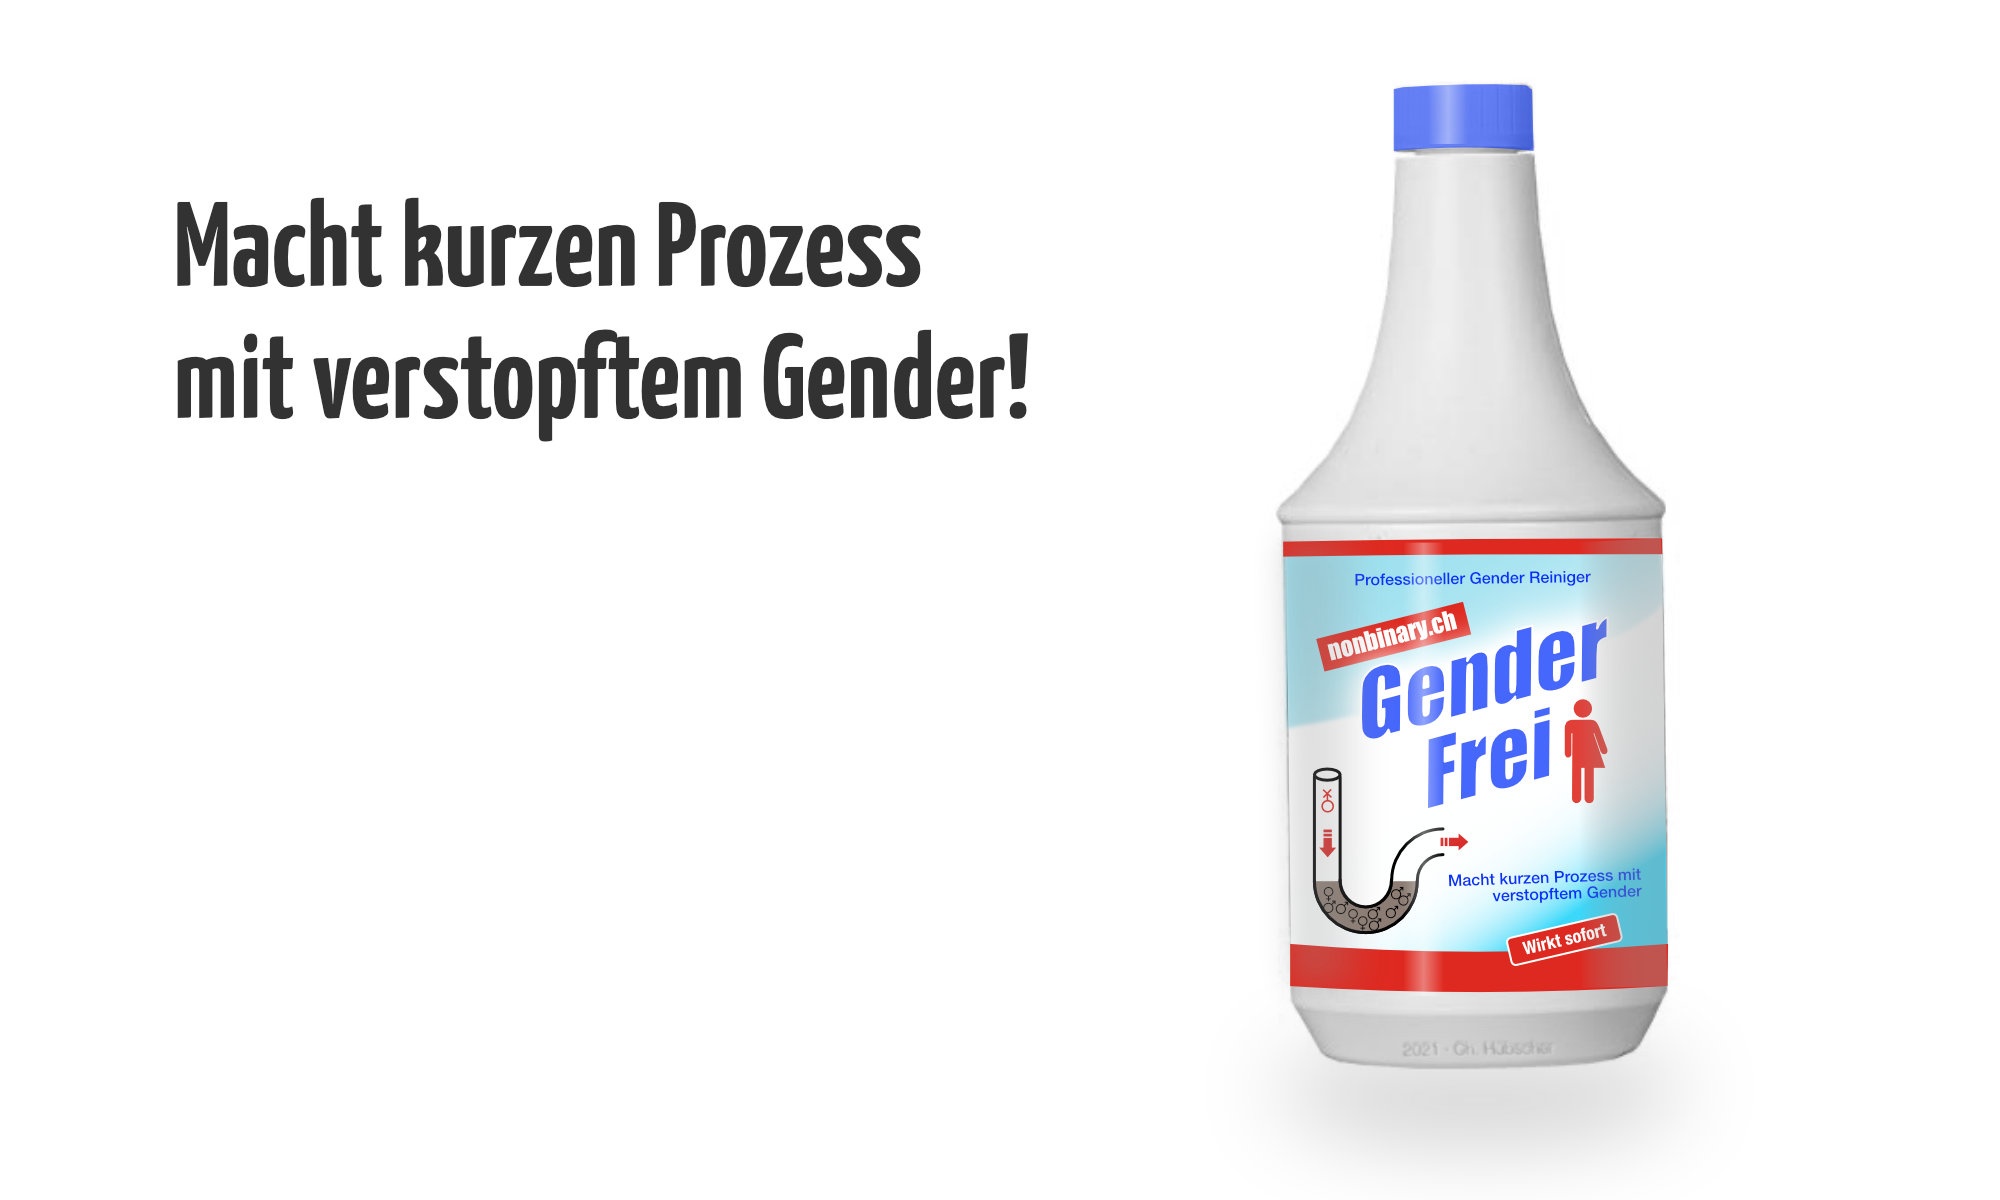 Gender Frei – Macht kurzen Prozess mit verstopftem Gender!